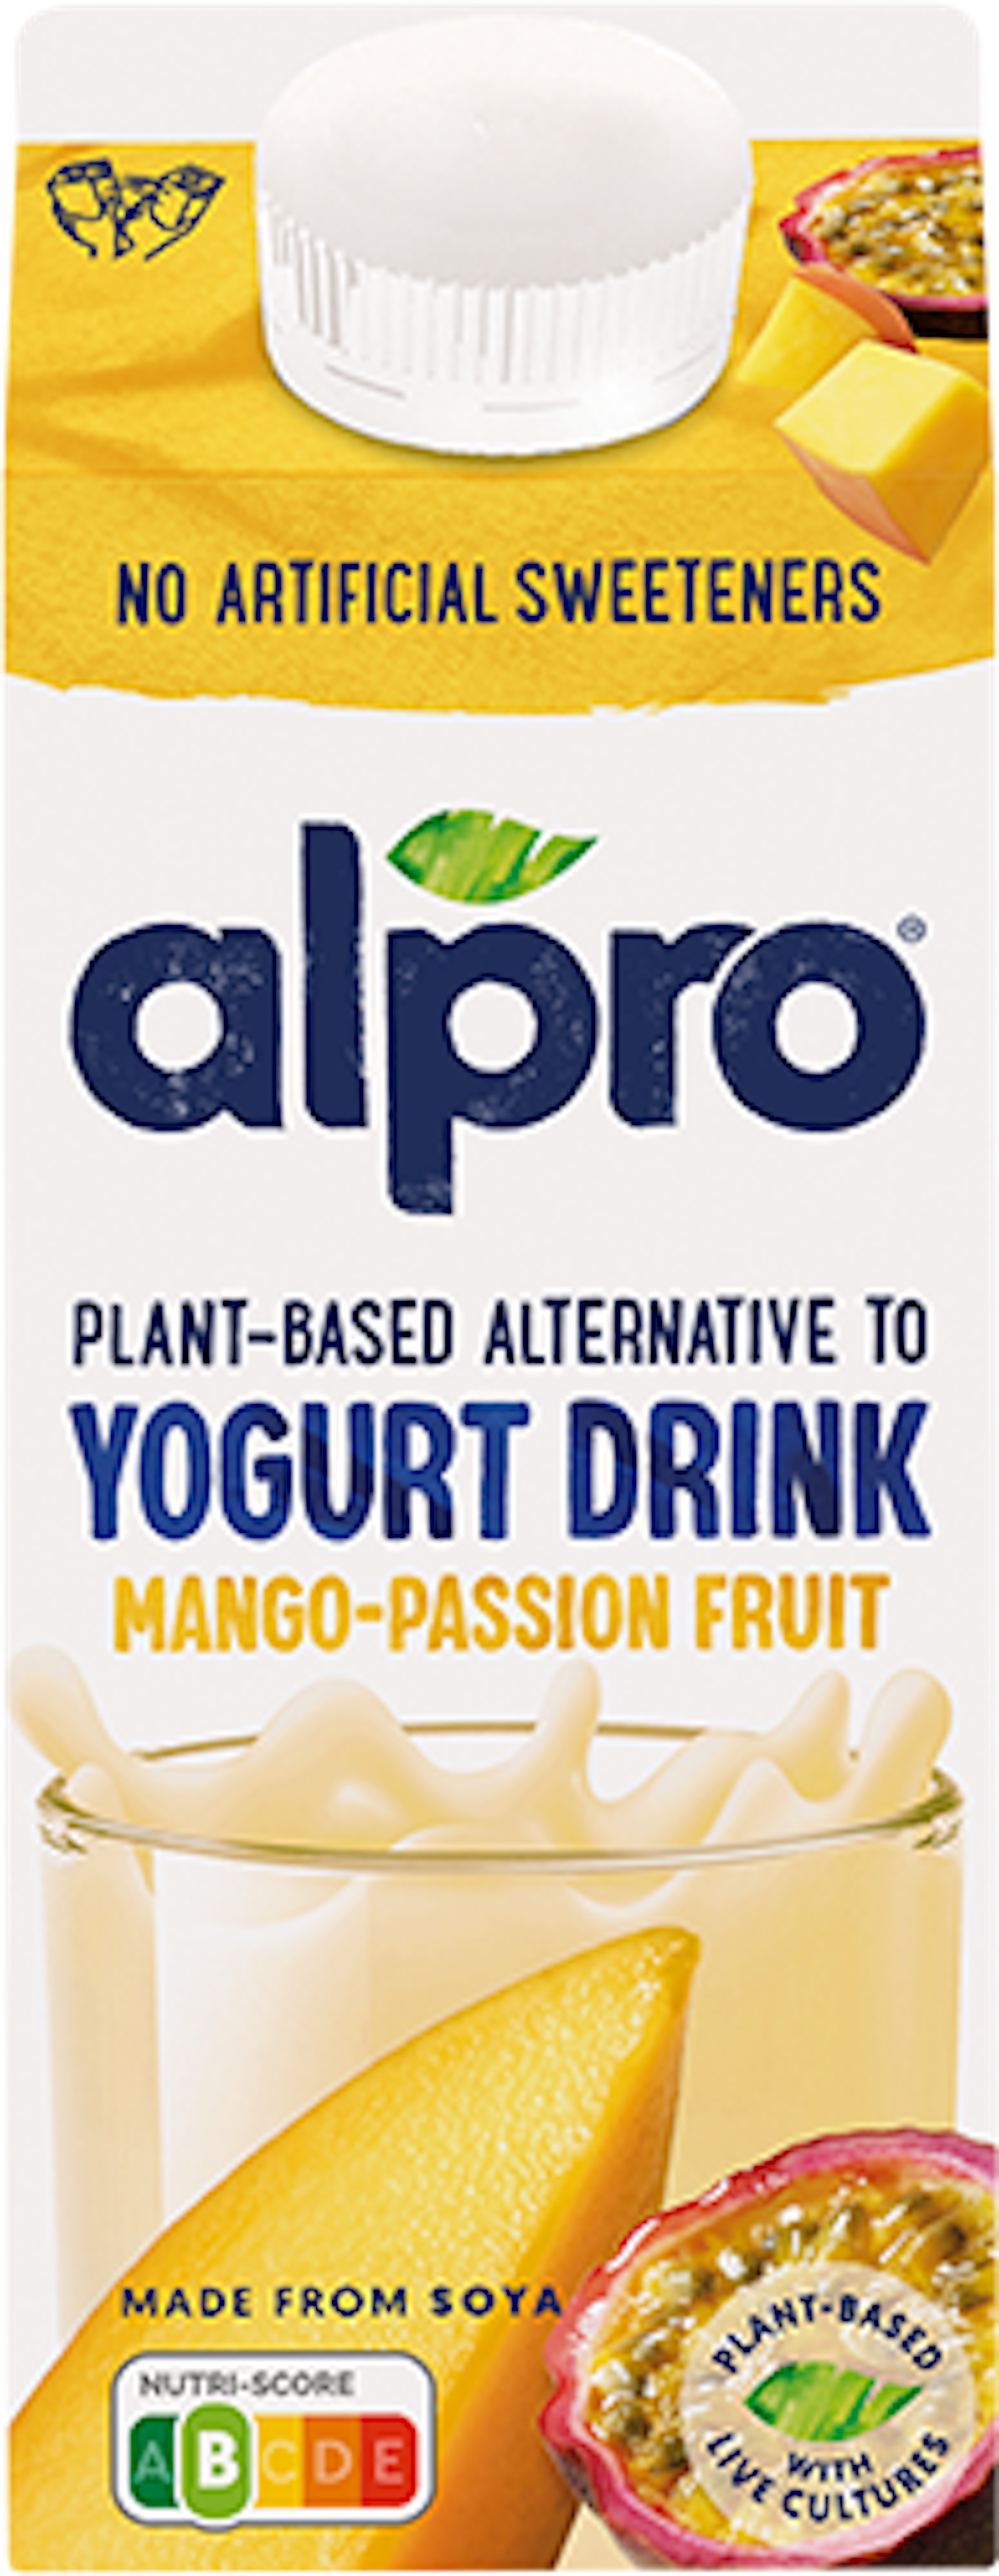 Alternative végétale au yaourt à boire mangue-fruit de la passion